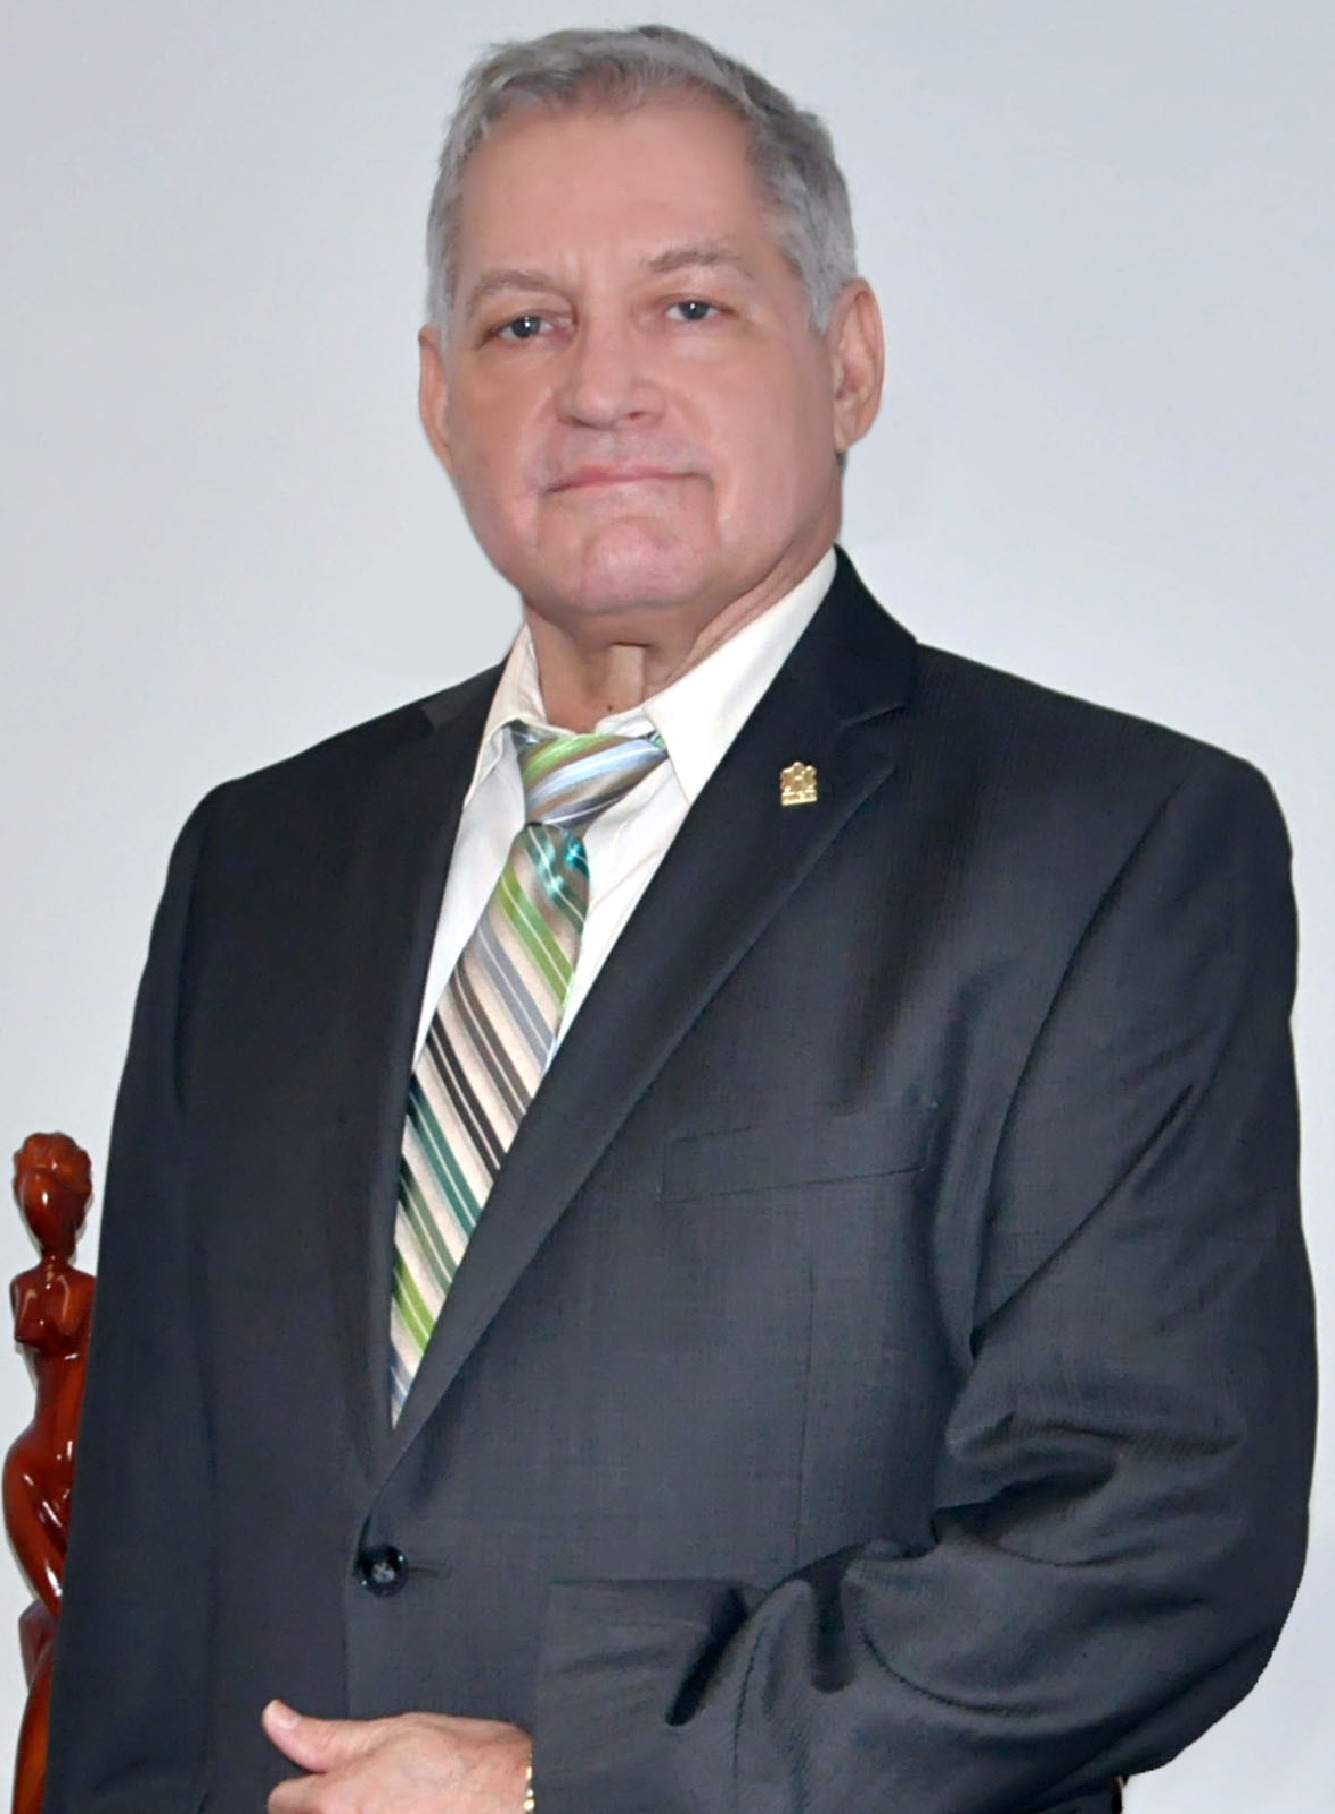 El presidente de la Asociación Nacional de Empresas e Industrias Herrera (ANEIH), ingeniero Euri Andújar